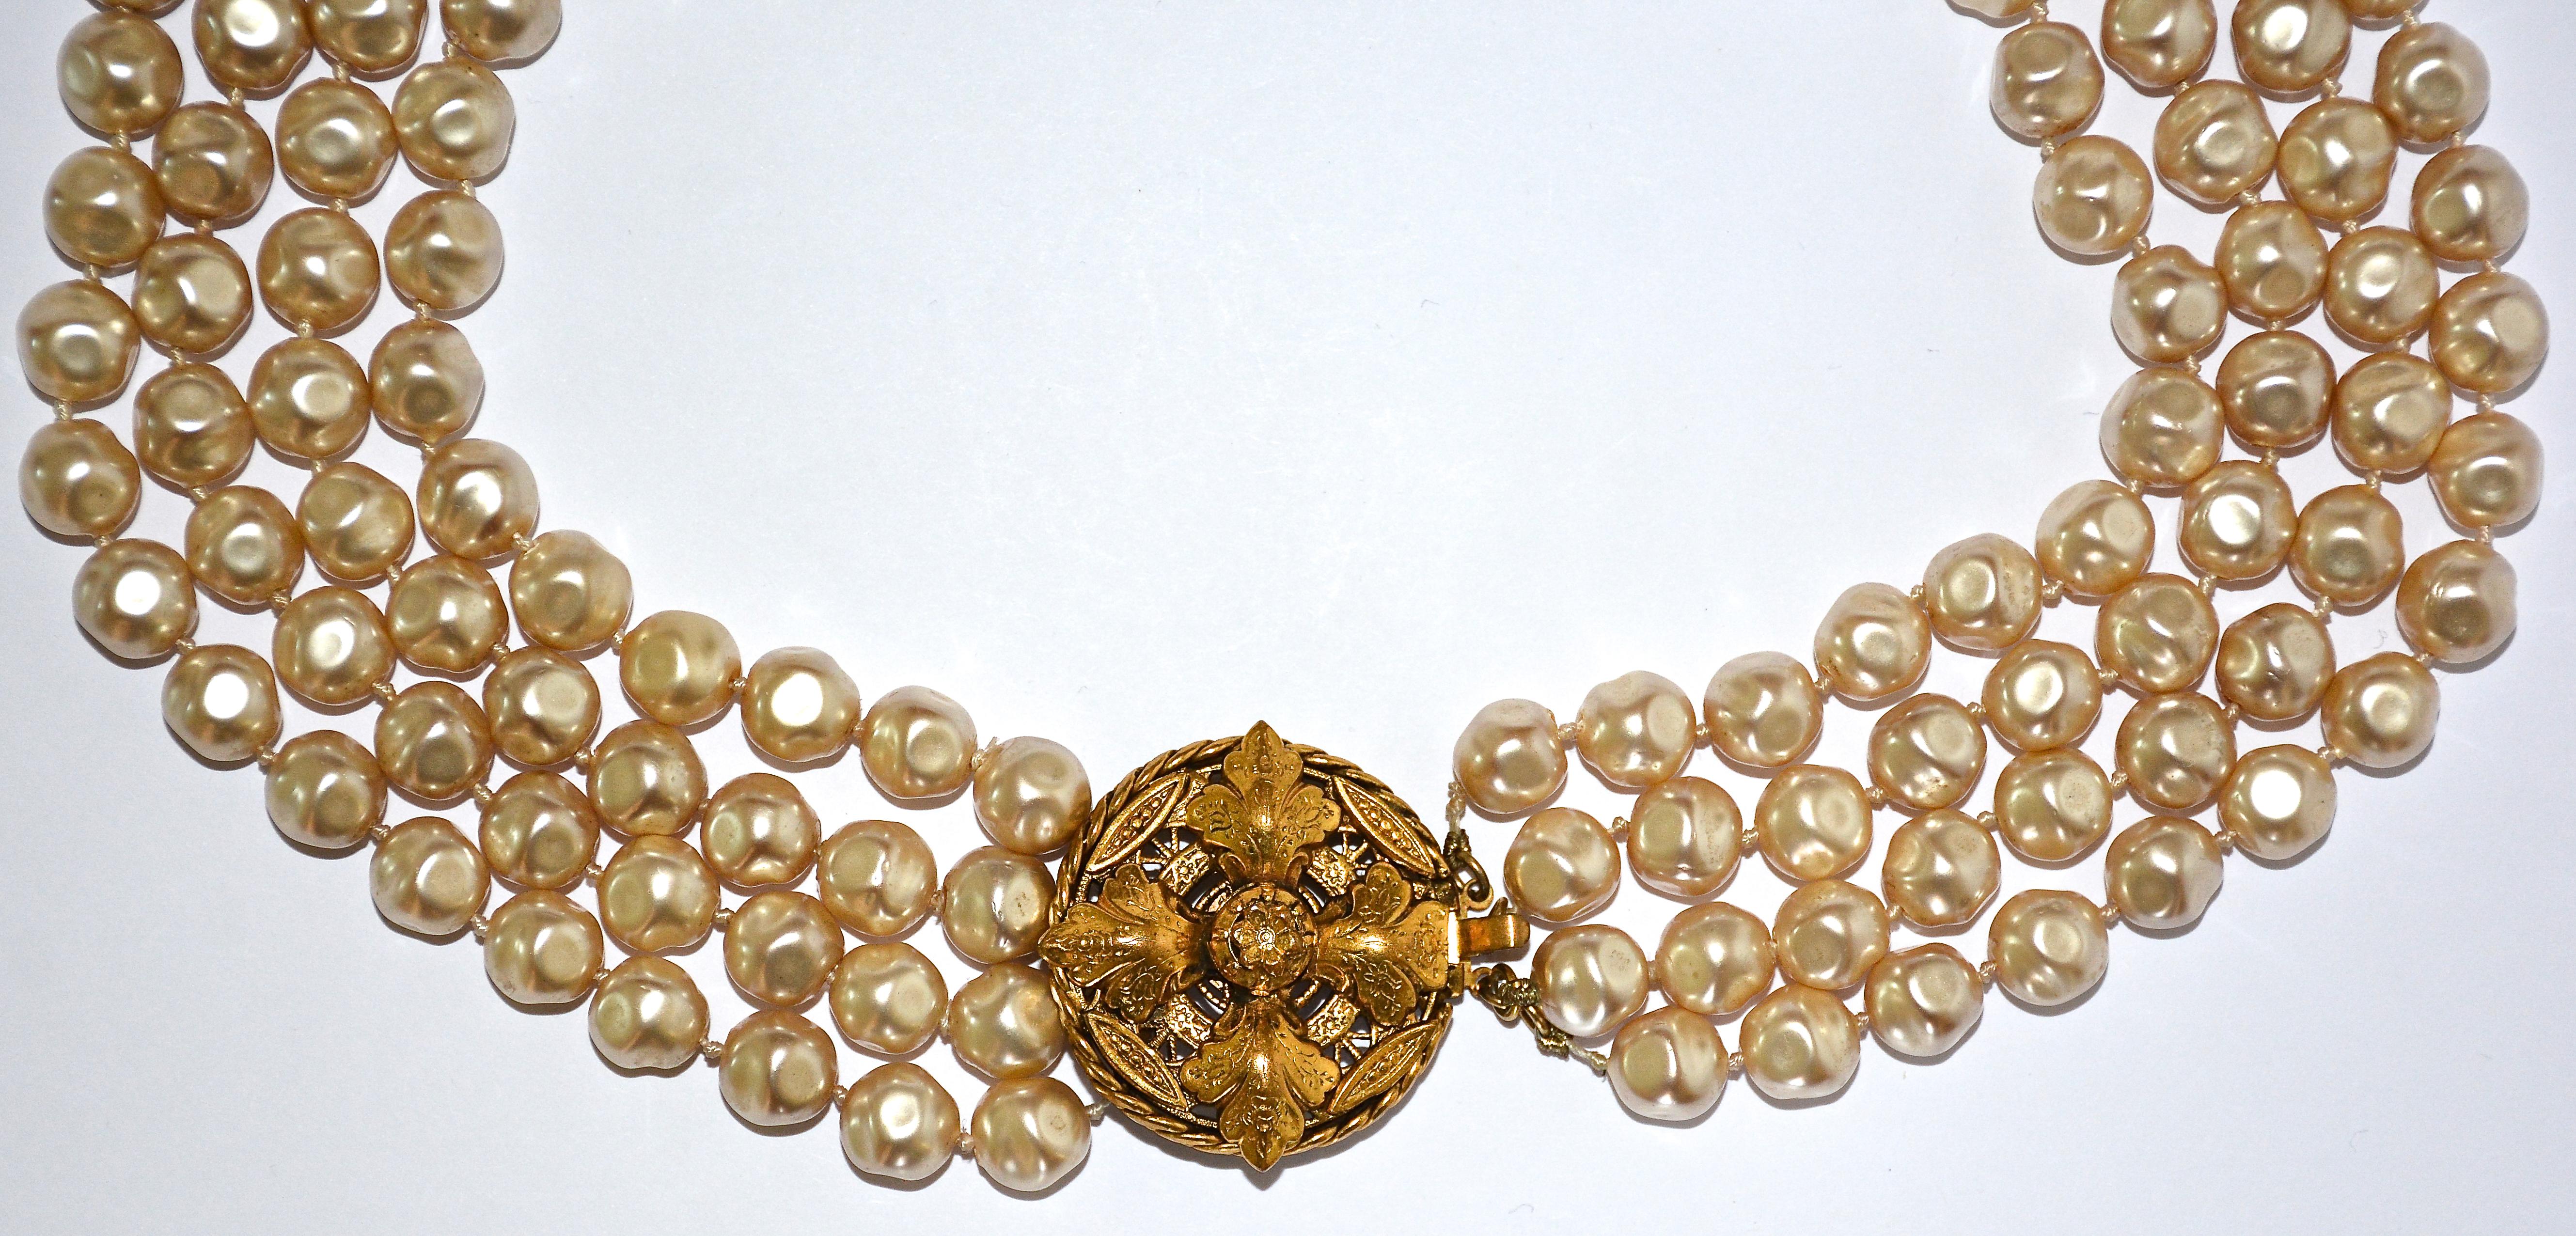 Eine wunderschöne Chanel Kunstperlenkette aus den ultra-glamourösen 1980er Jahren. 

Diese wunderschöne Halskette besteht aus vier abgestuften Strängen aus Barockperlen, die mit einem kunstvoll verzierten goldenen Medaillonverschluss verziert sind.